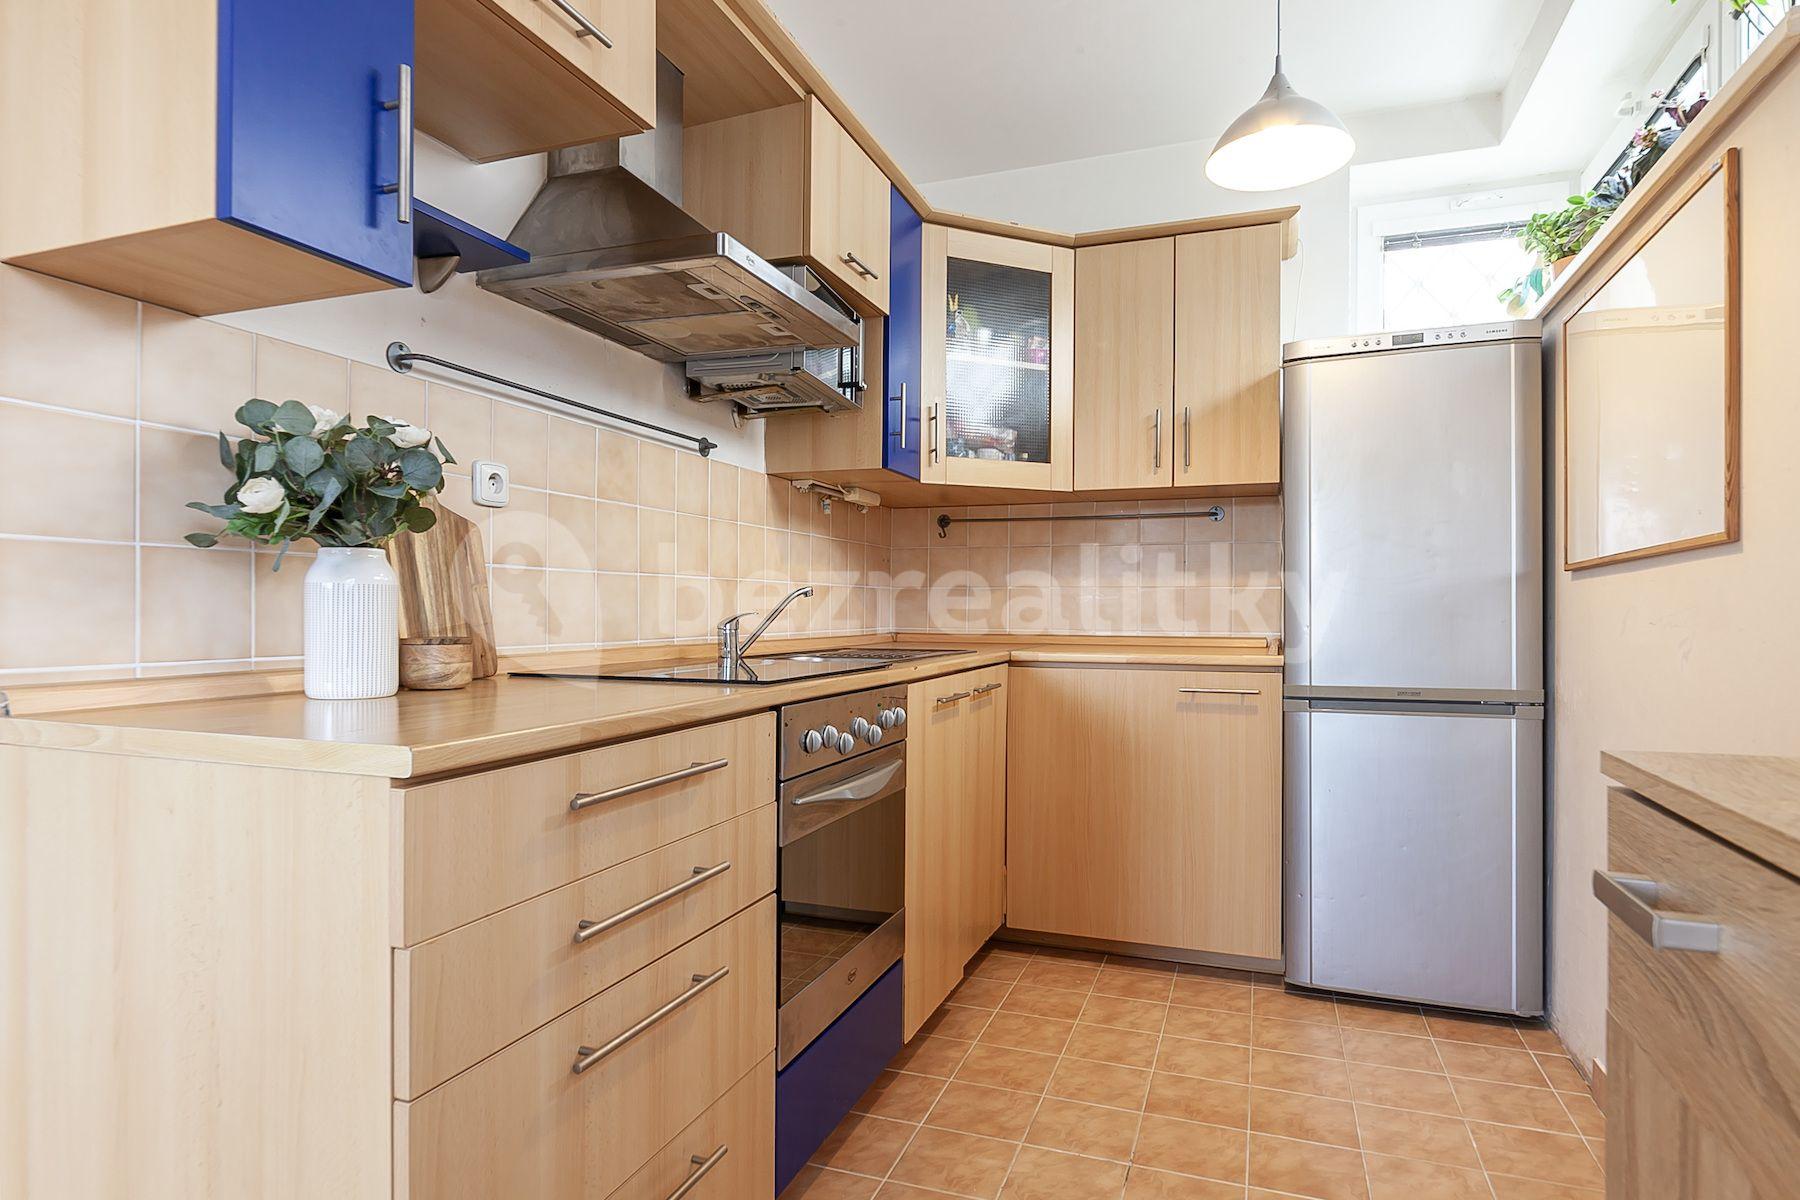 1 bedroom with open-plan kitchen flat for sale, 57 m², U Zahradního města, Prague, Prague